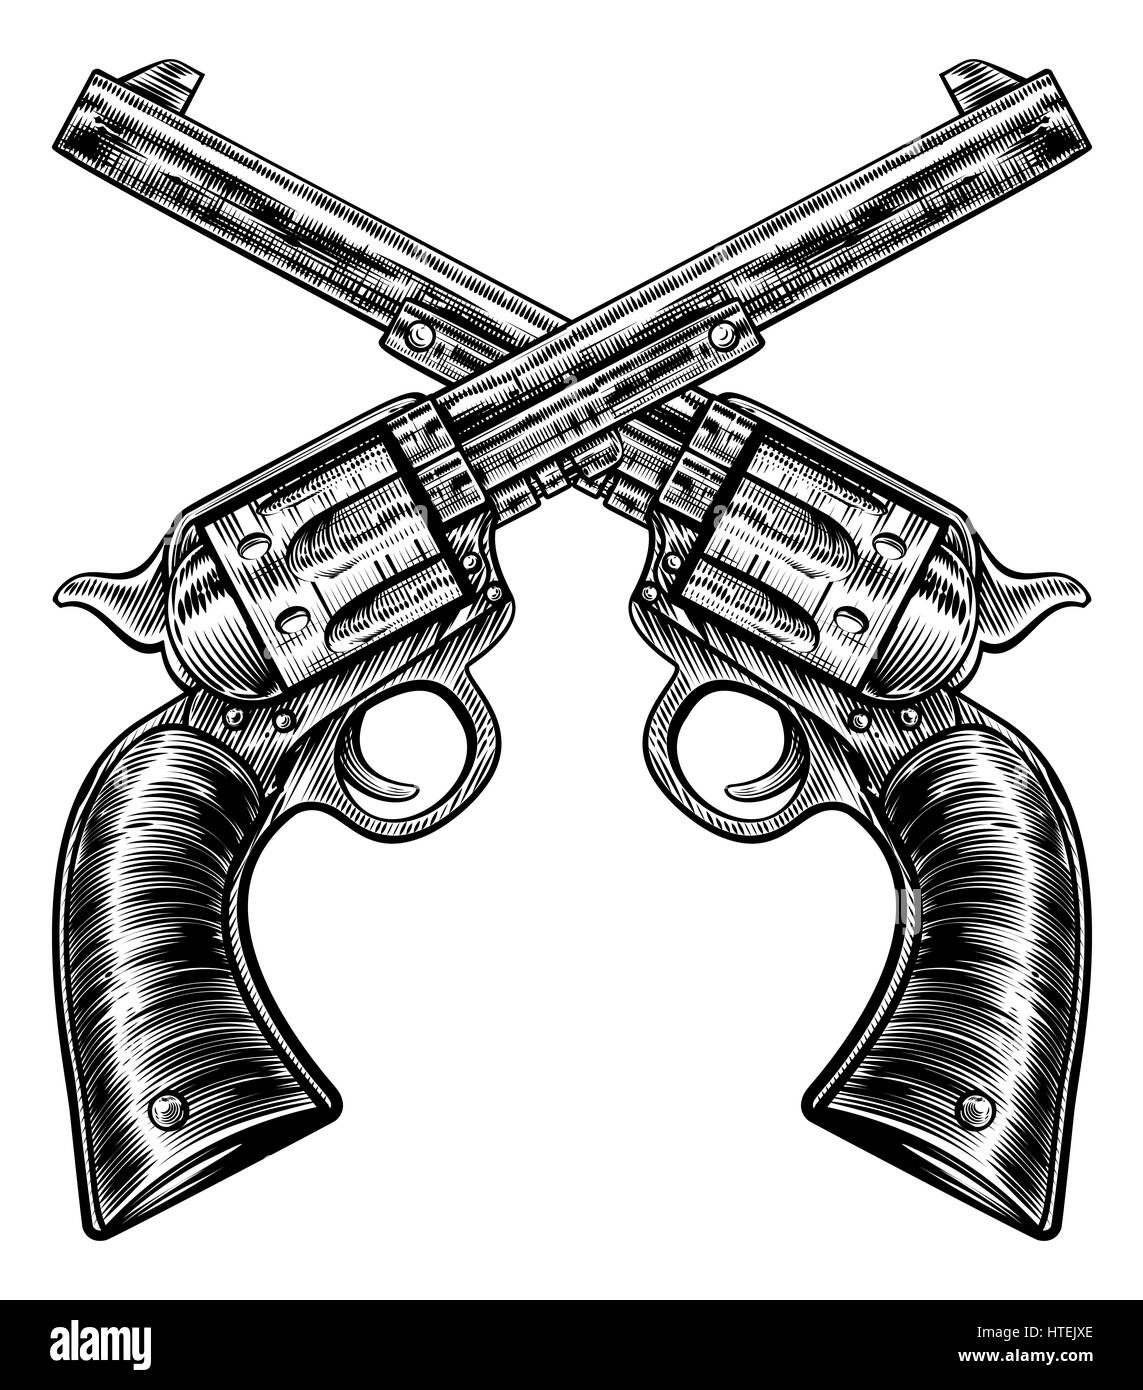 Una coppia di attraversata pistola pistola revolver sei shooter pistole disegnato in un vintage retrò xilografia incisa o stile inciso Foto Stock